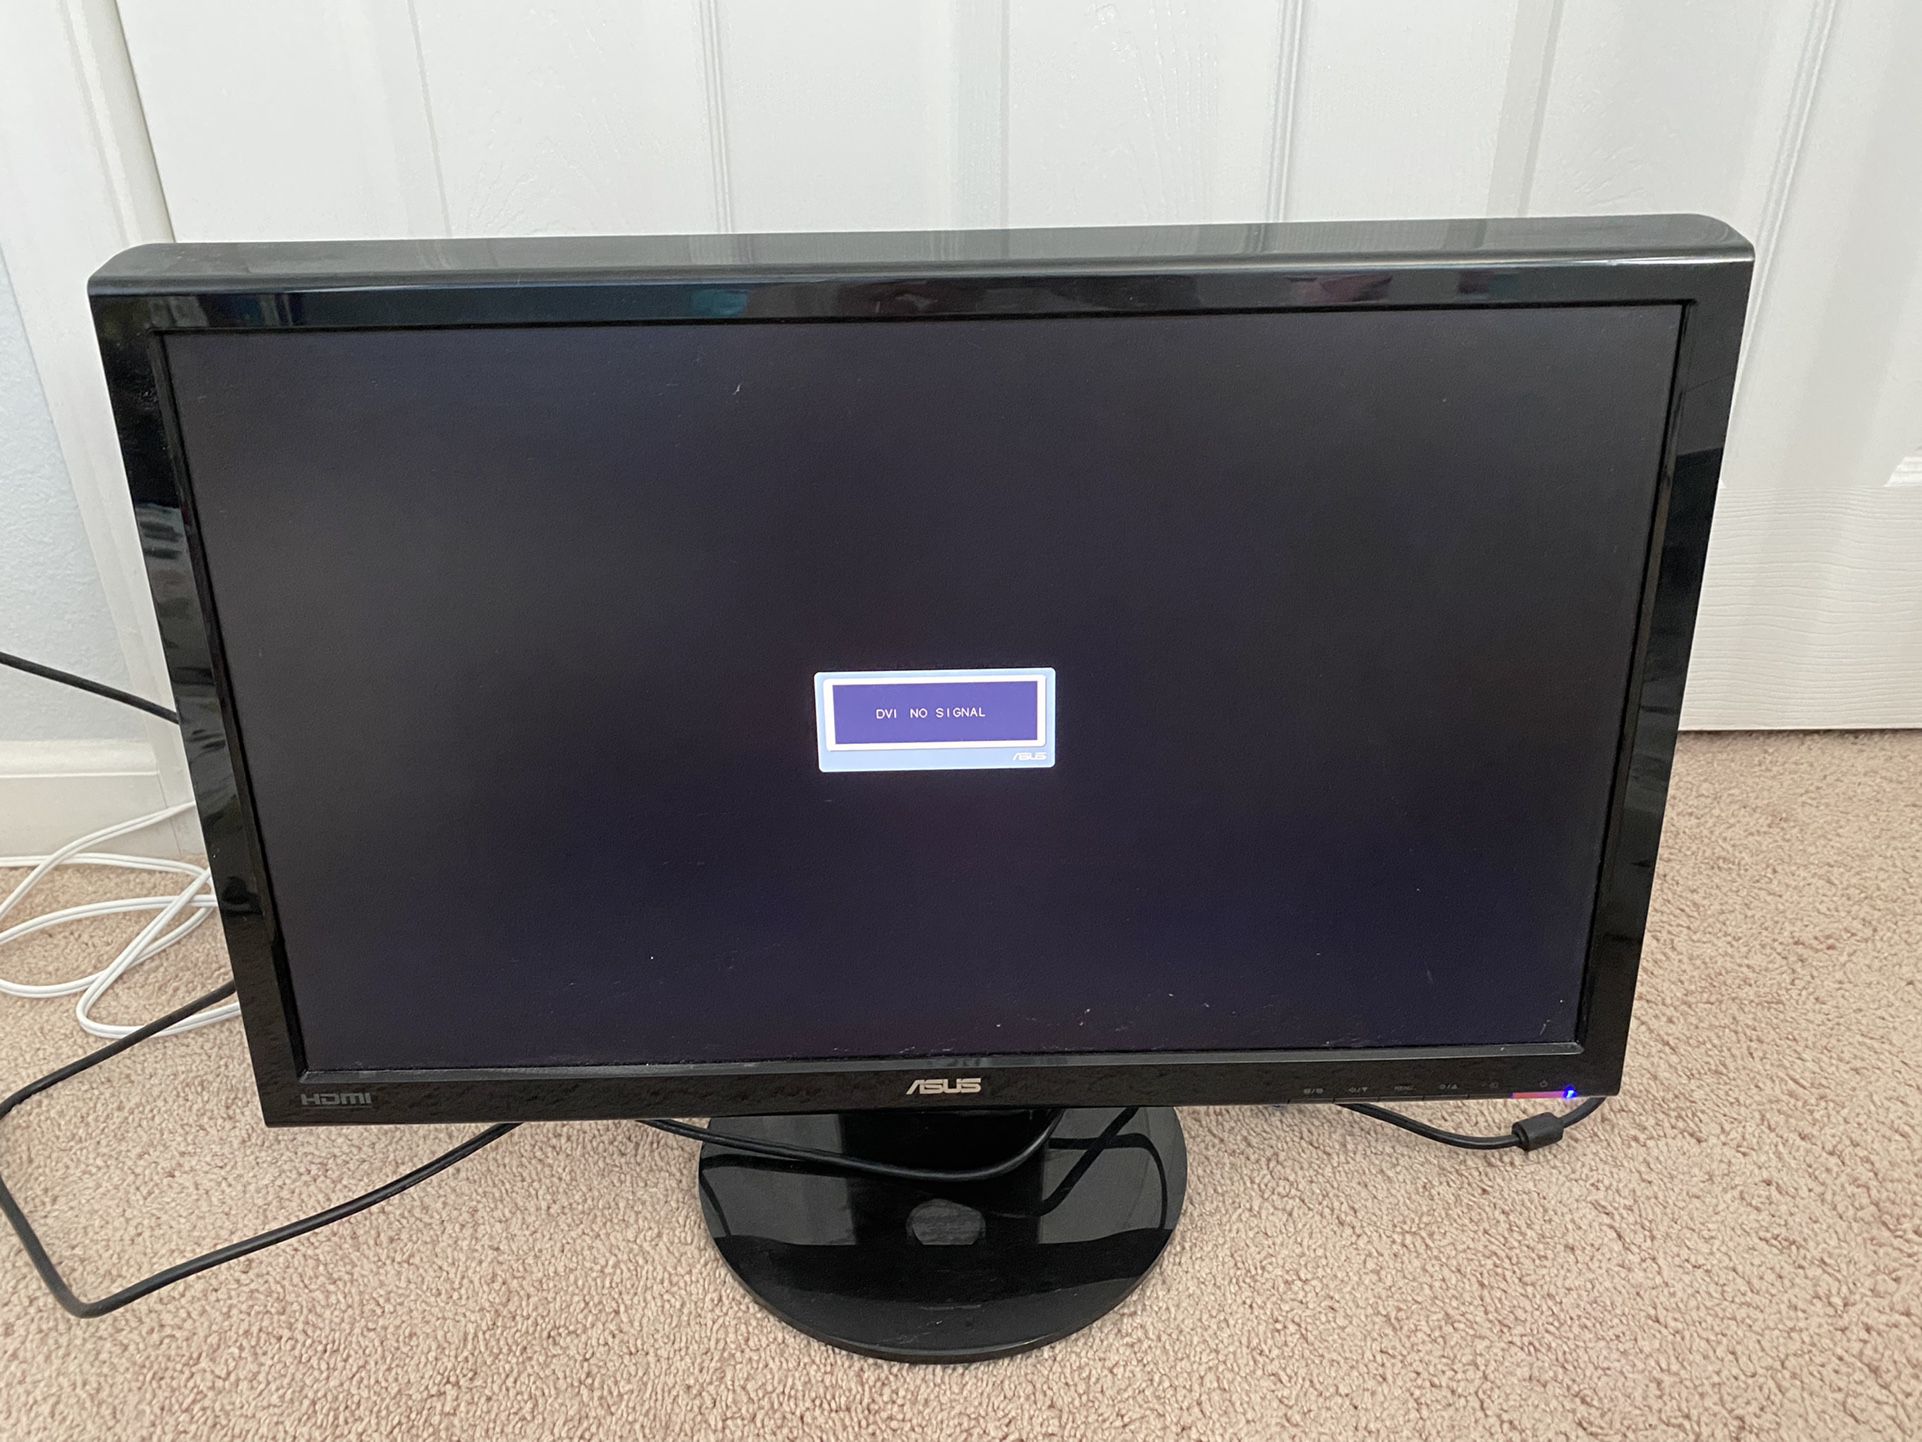 Asus 23” LCD Monitor